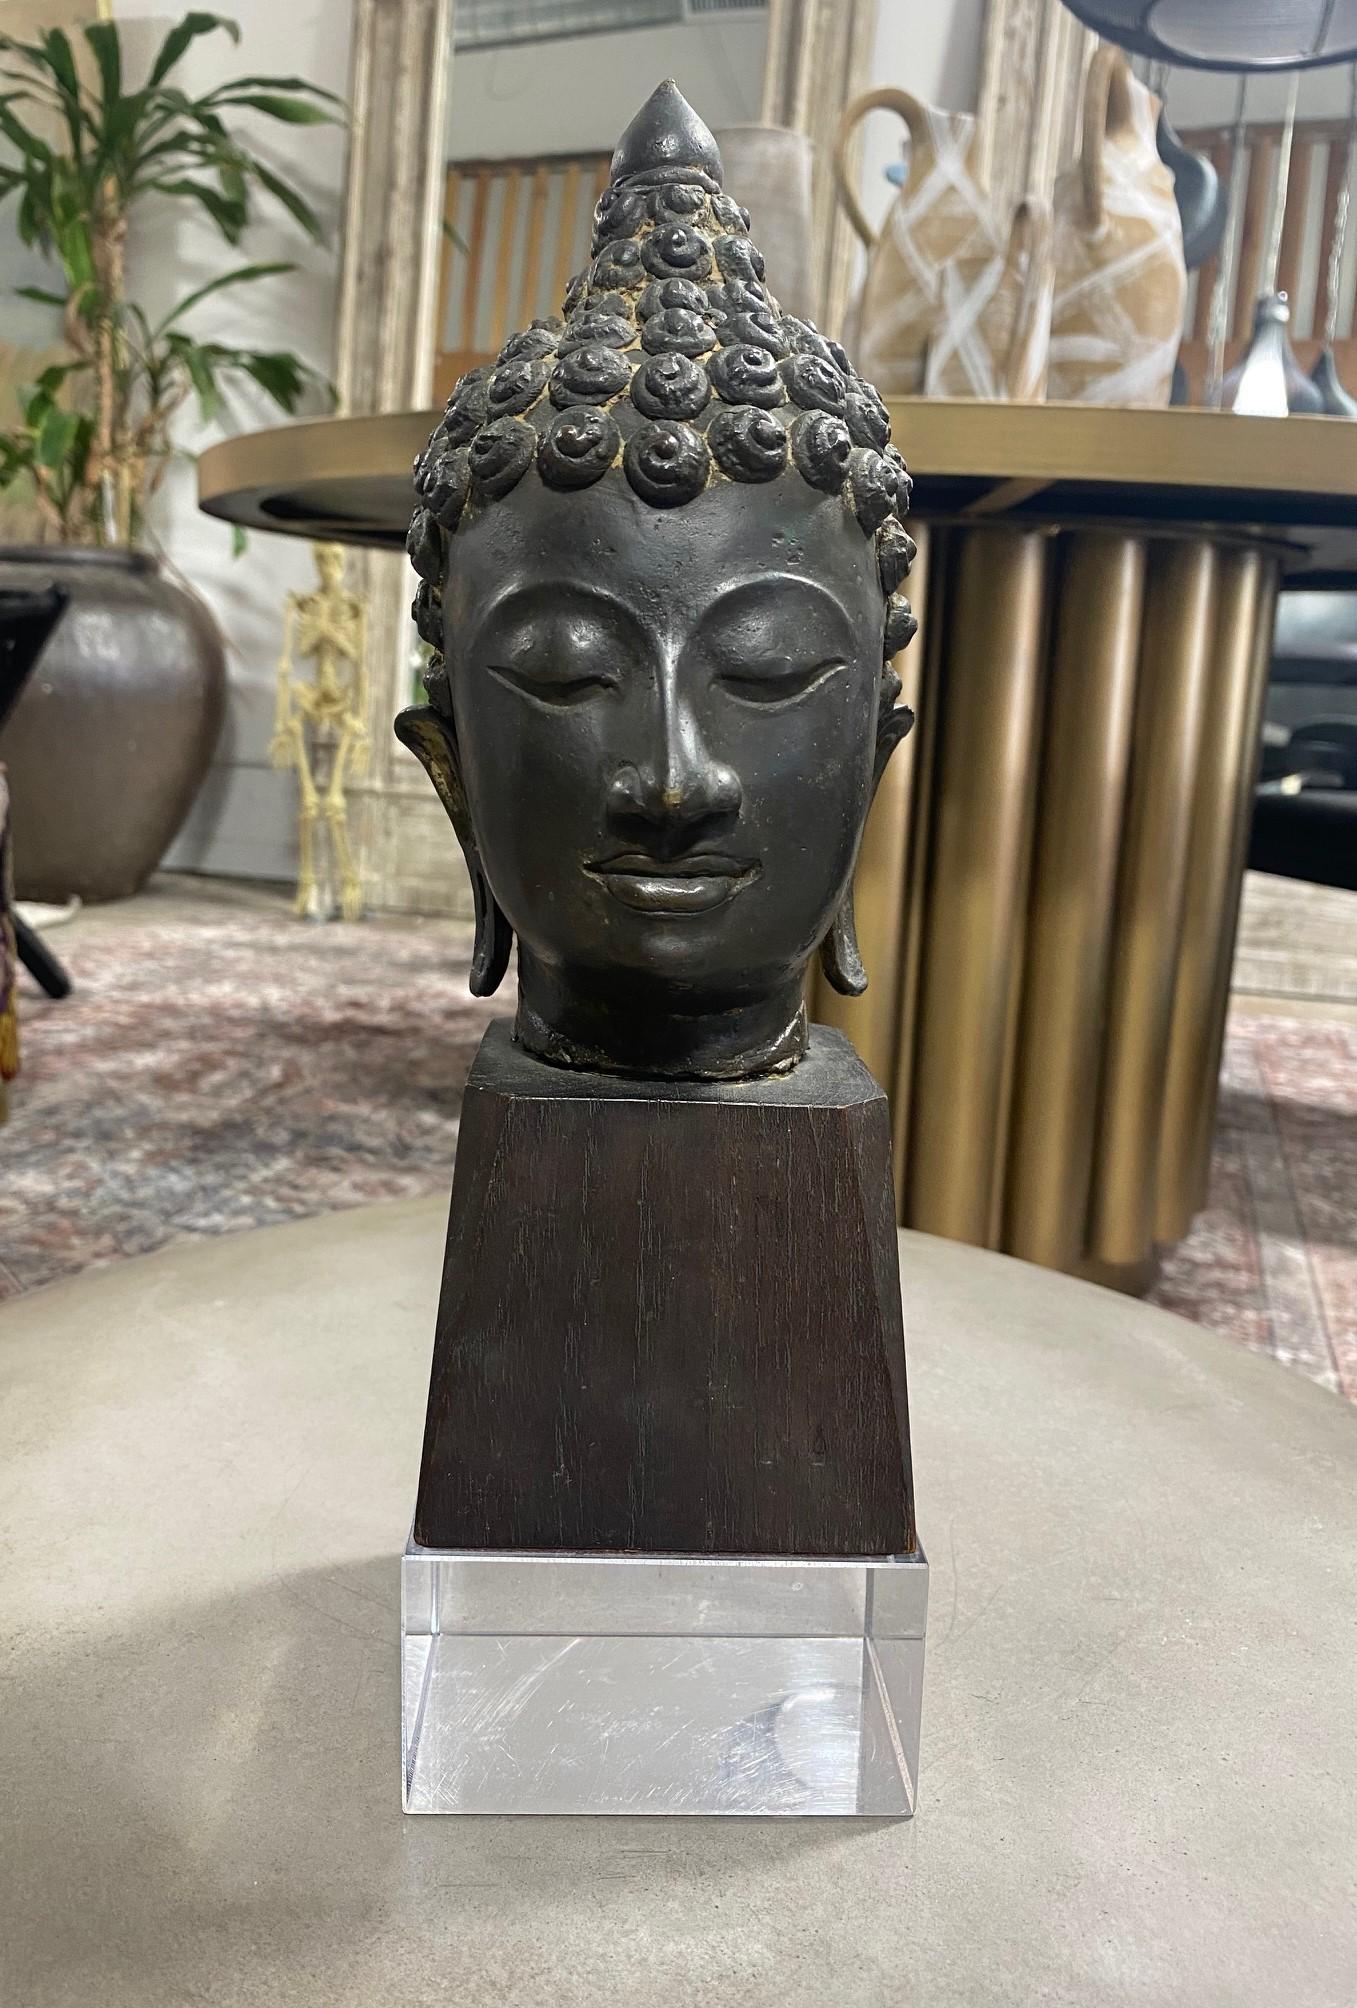 Tête de bouddha en bronze de Thaïlande/ Siam (Asie du Sud-Est) merveilleusement sculptée sur un socle en bois et lucite. Le Bouddha a les yeux fermés dans une méditation sereine. La pièce est agréable au toucher et a du poids. Très bien réalisé avec